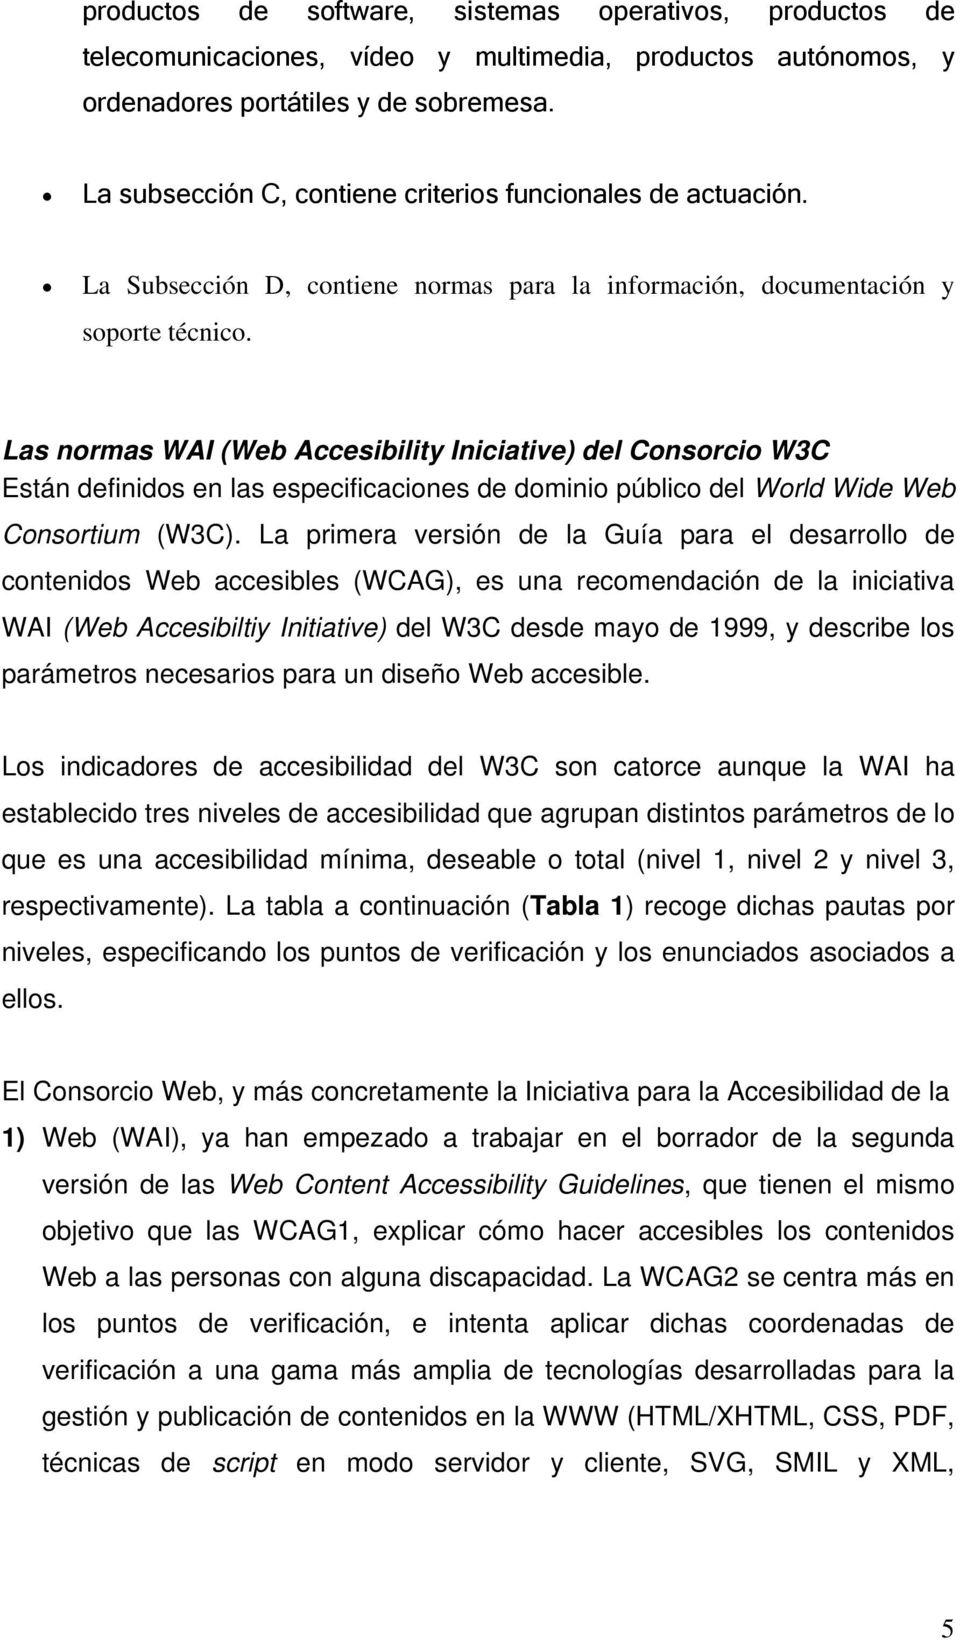 Las normas WAI (Web Accesibility Iniciative) del Consorcio W3C Están definidos en las especificaciones de dominio público del World Wide Web Consortium (W3C).